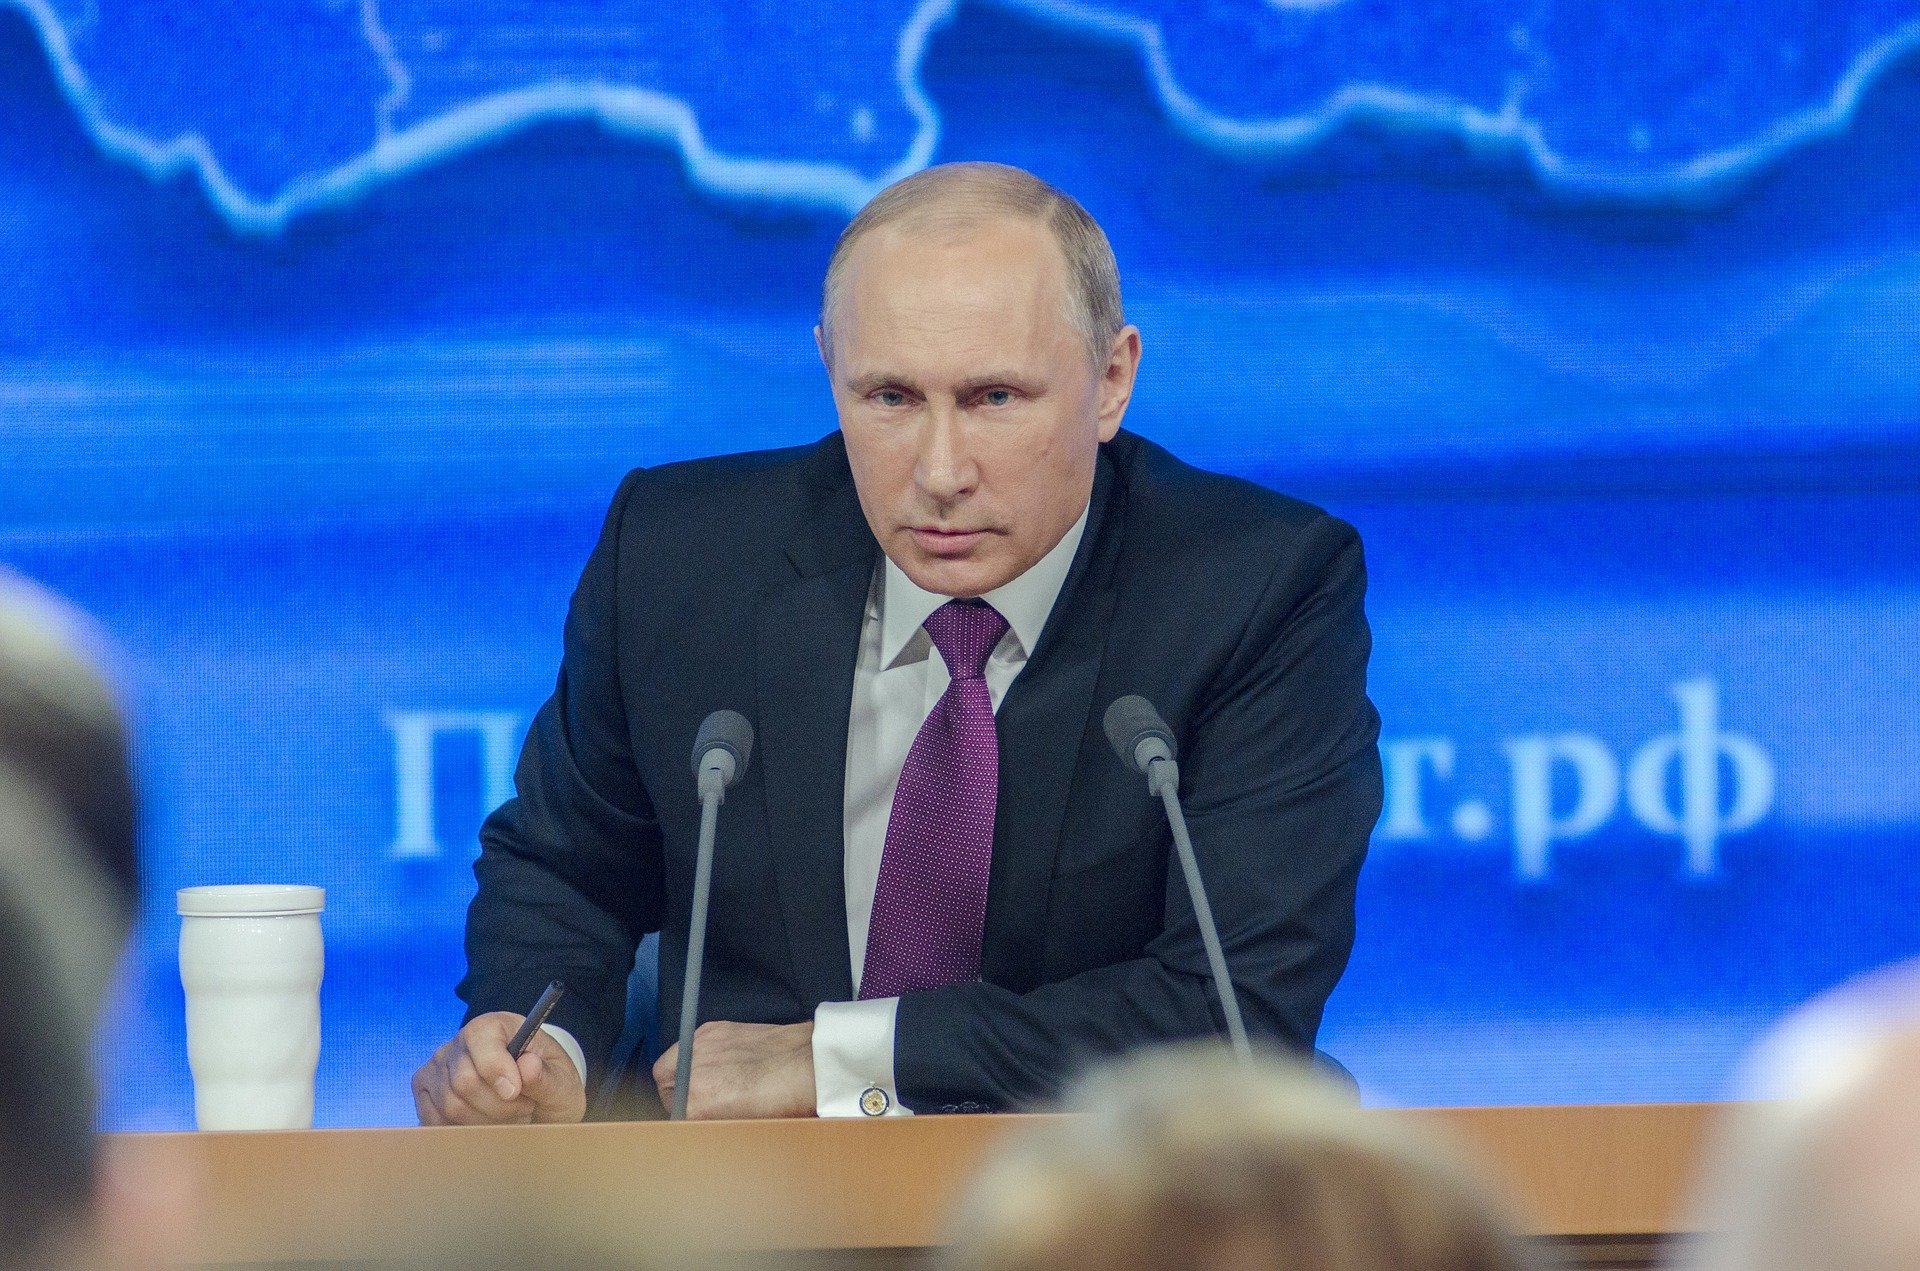 Vladimir Putin Makes His Nuclear Threat